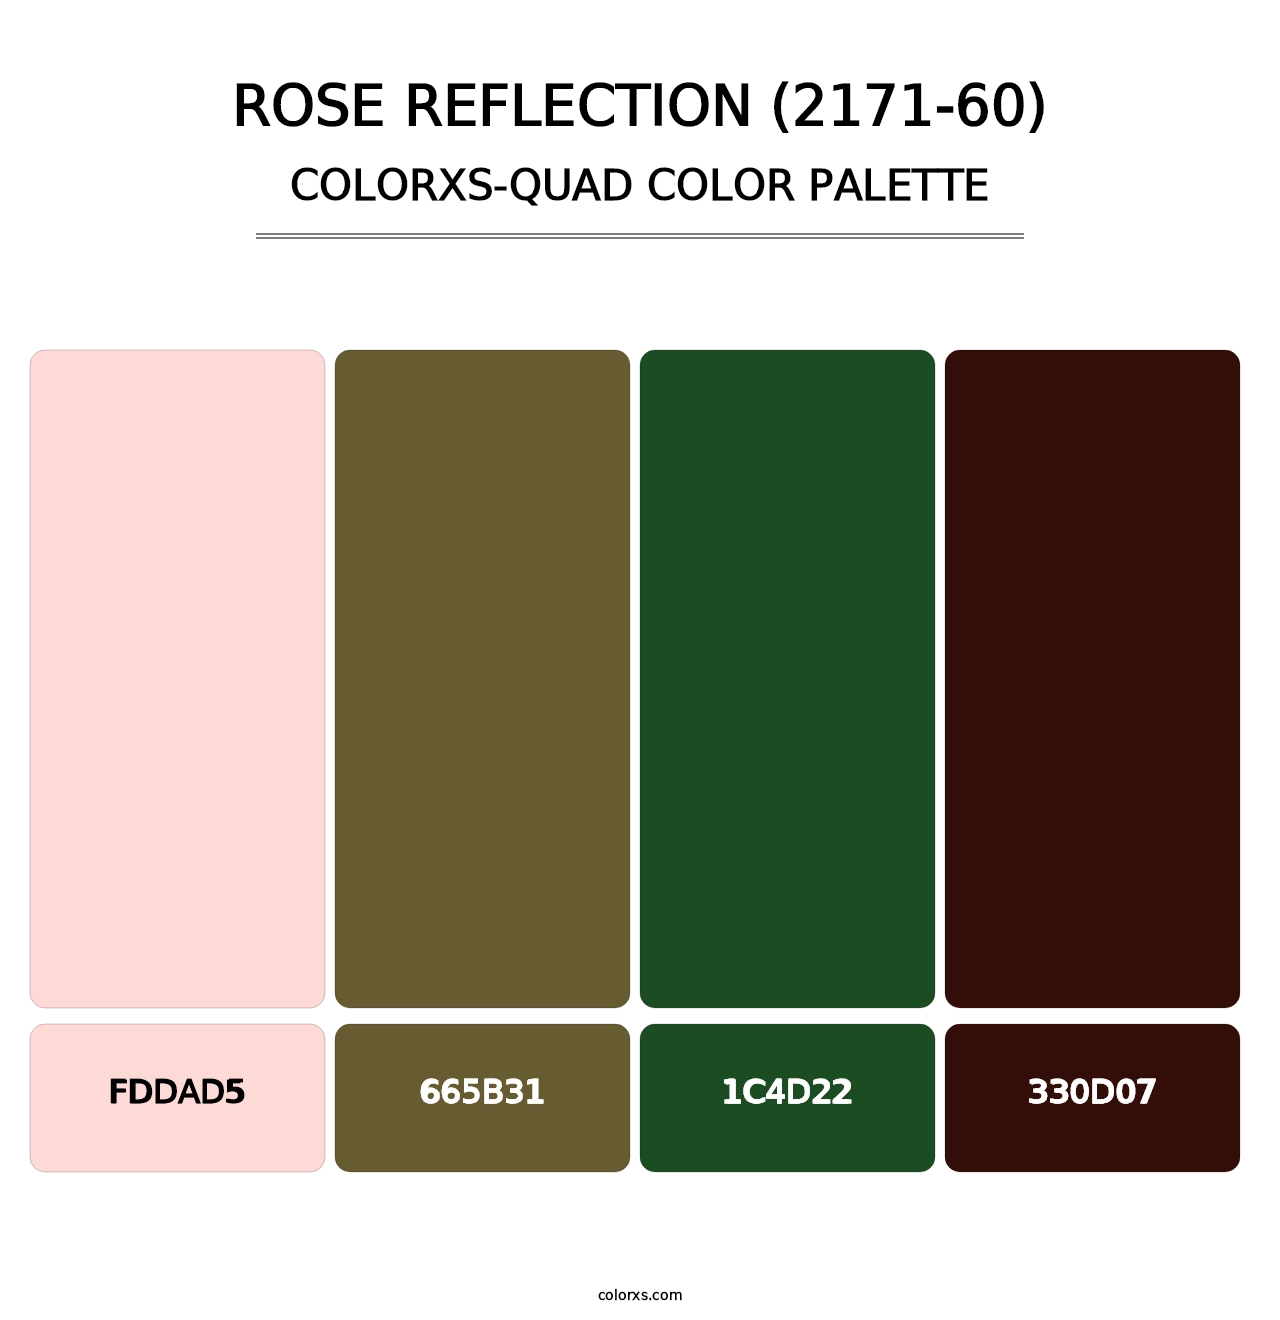 Rose Reflection (2171-60) - Colorxs Quad Palette